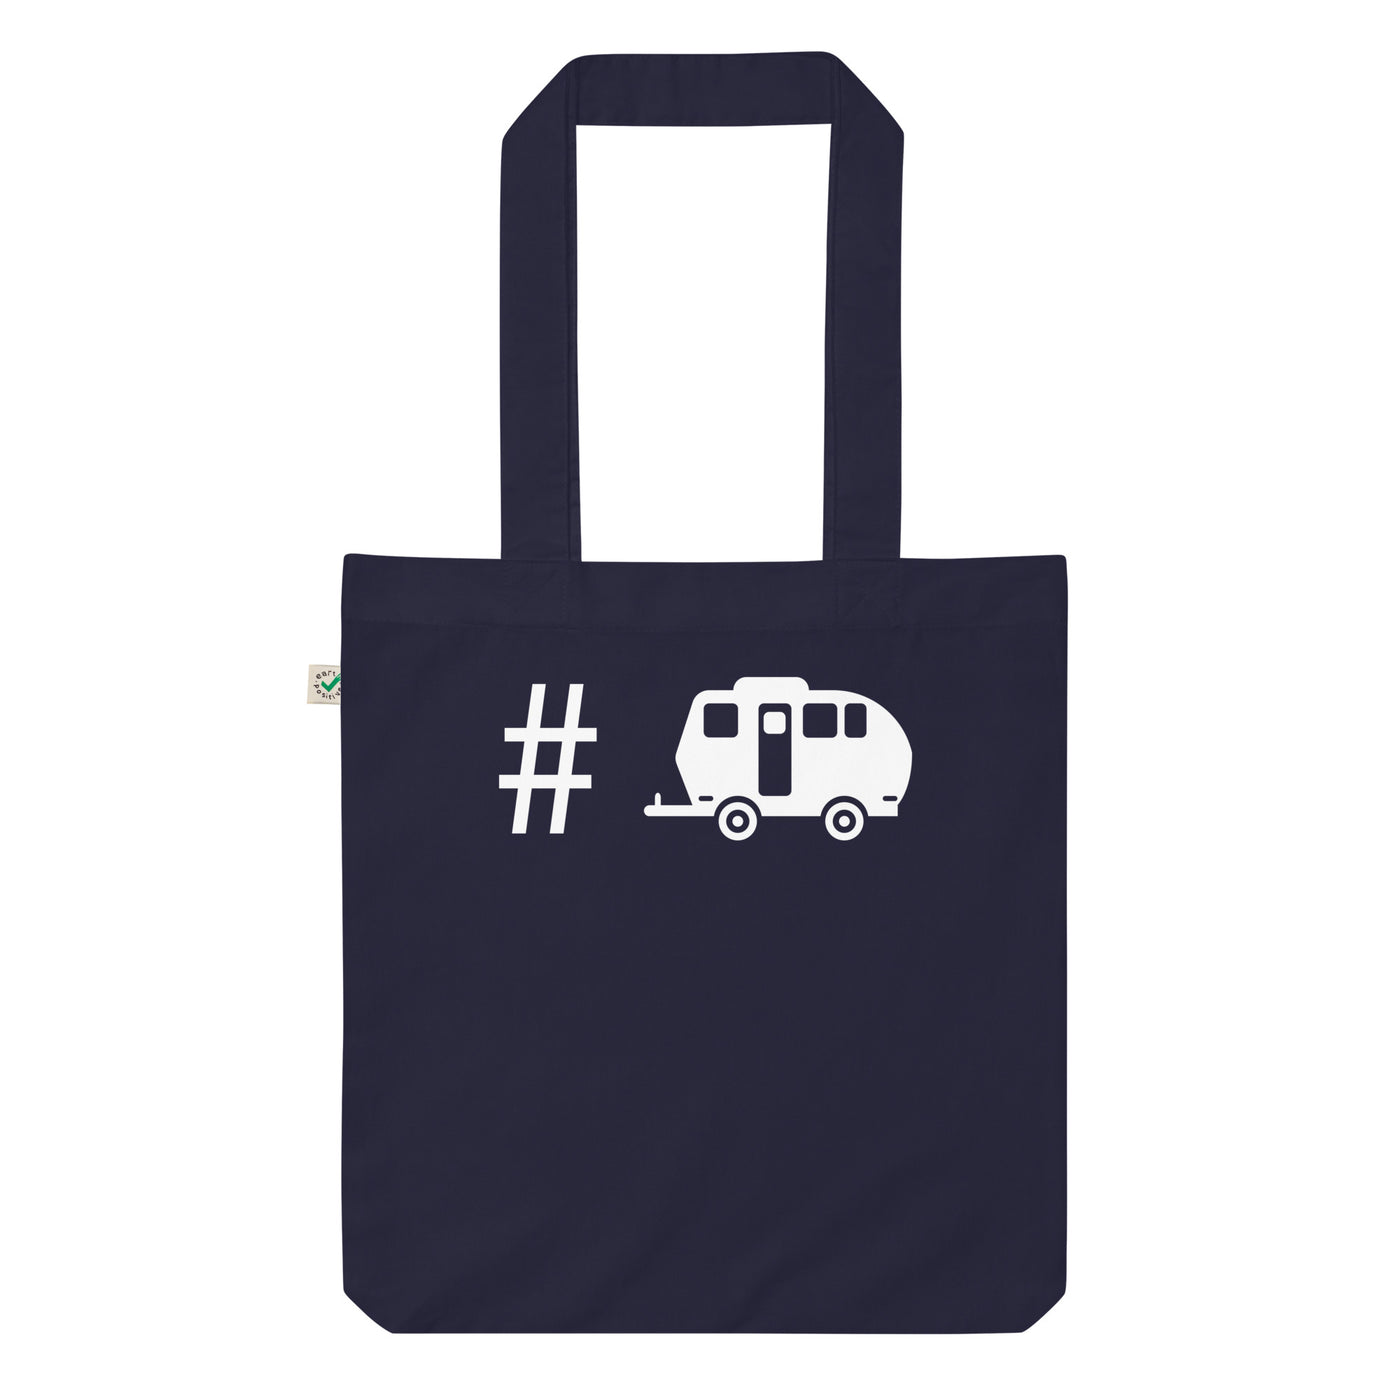 Hashtag - Campingwagen - Organic Einkaufstasche camping